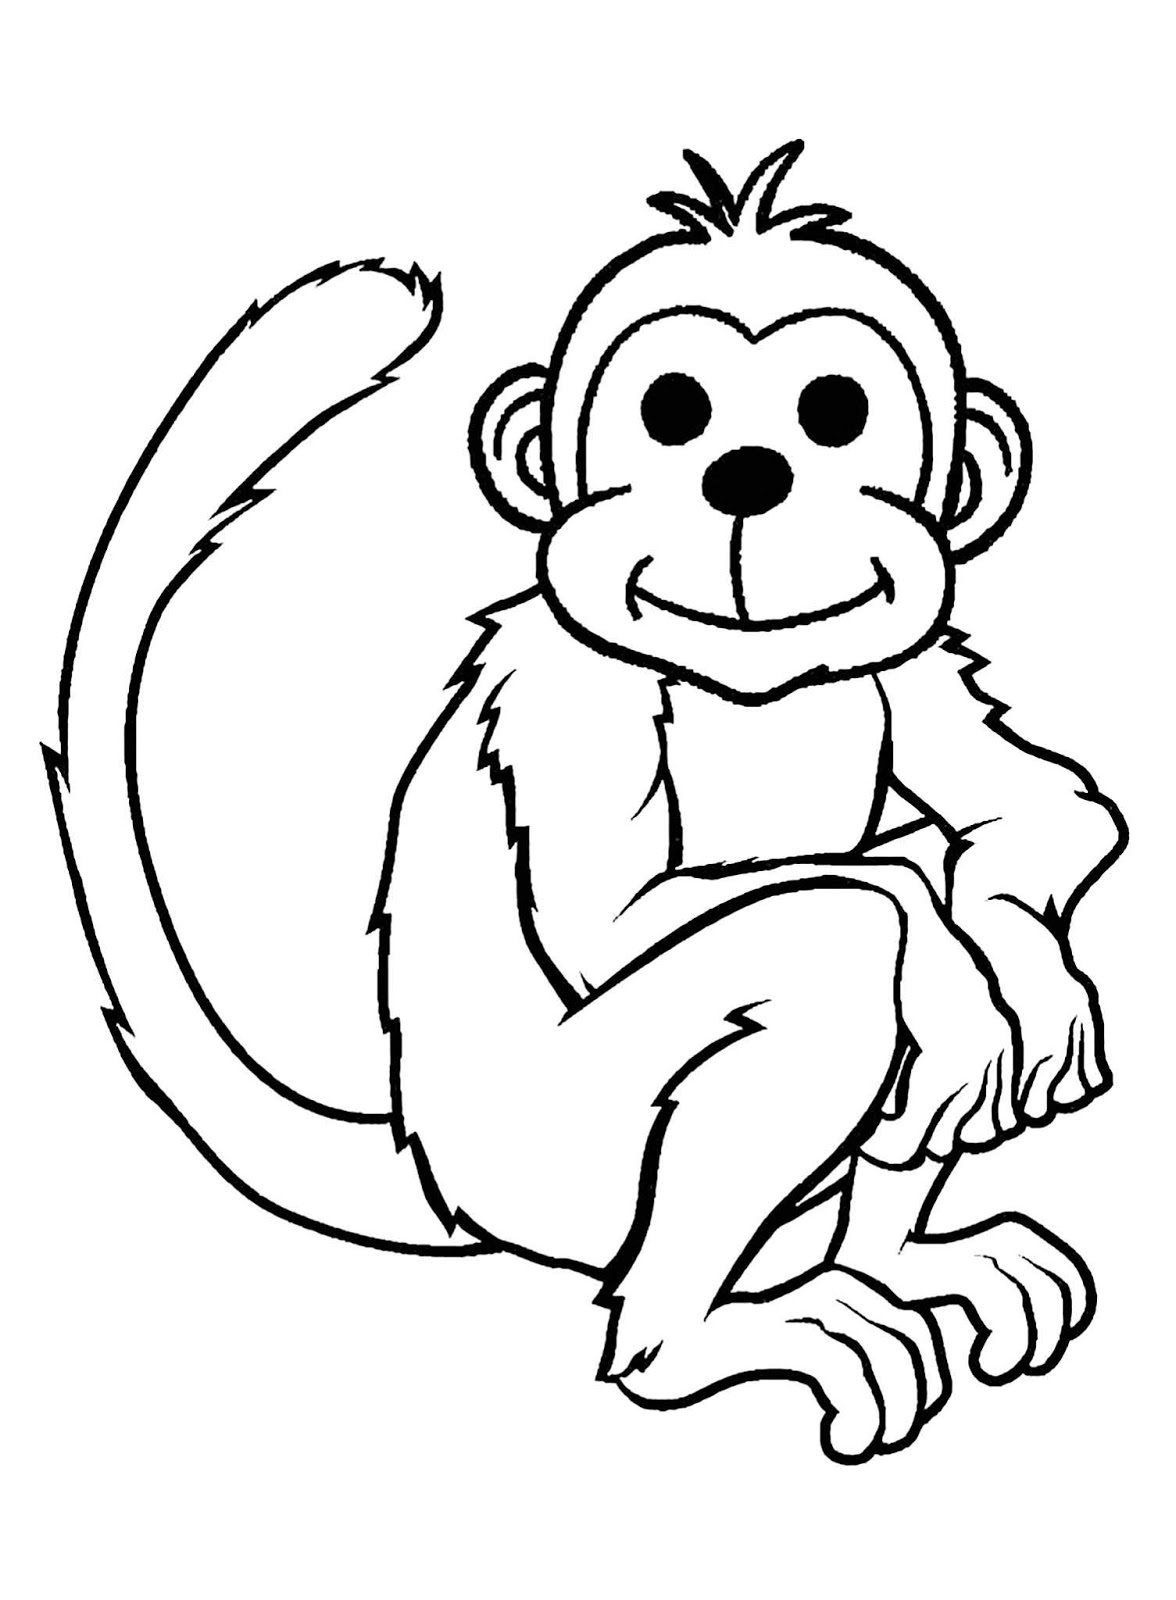 Tranh tô màu con khỉ ngồi nhìn